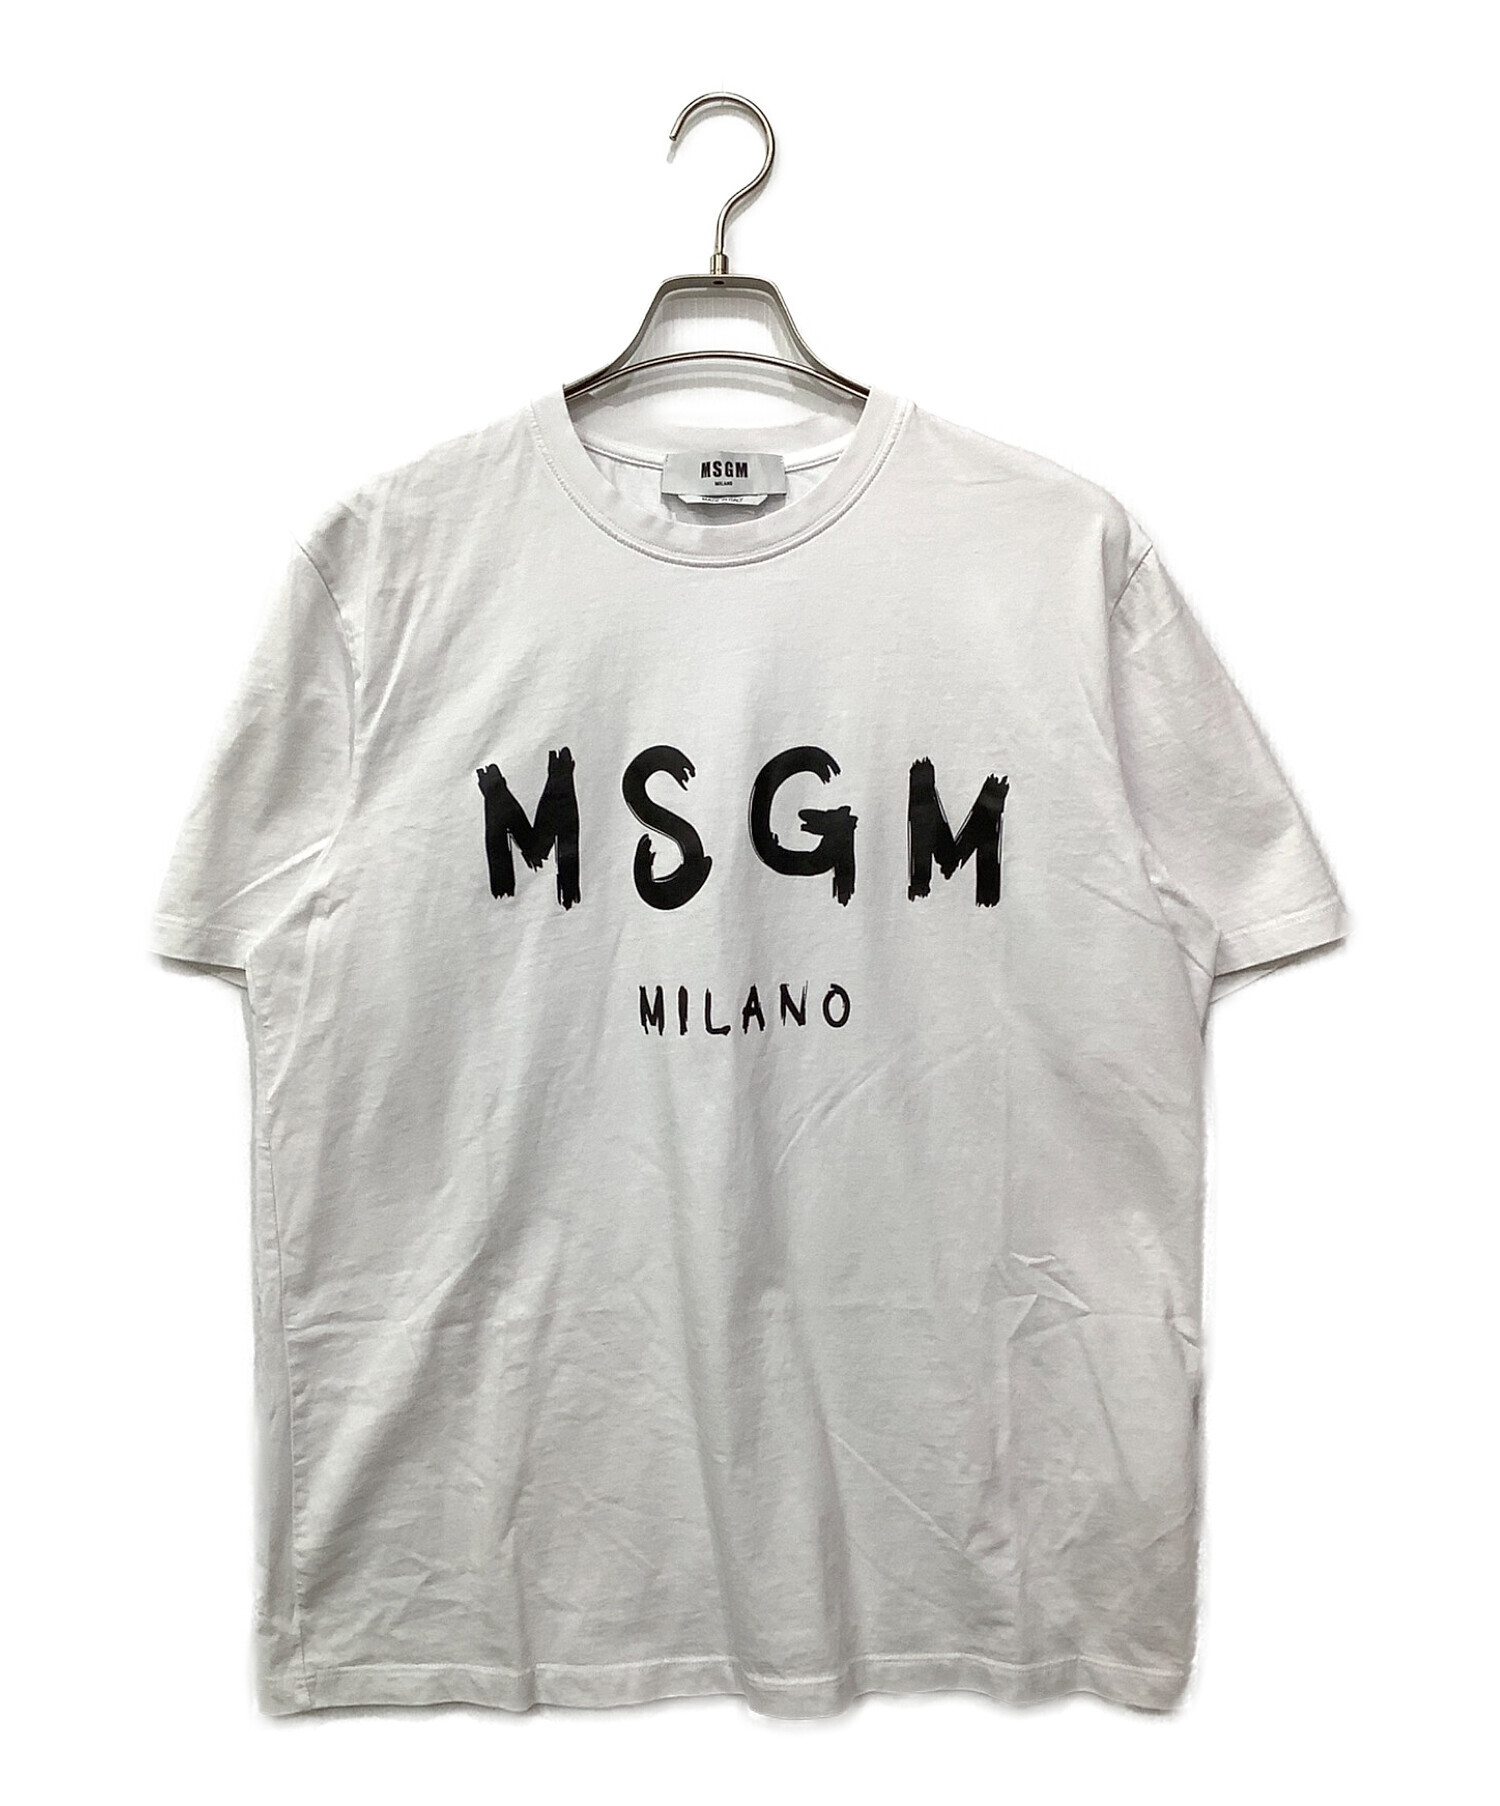 MSGM (エムエスジーエム) ロゴTシャツ ホワイト サイズ:L